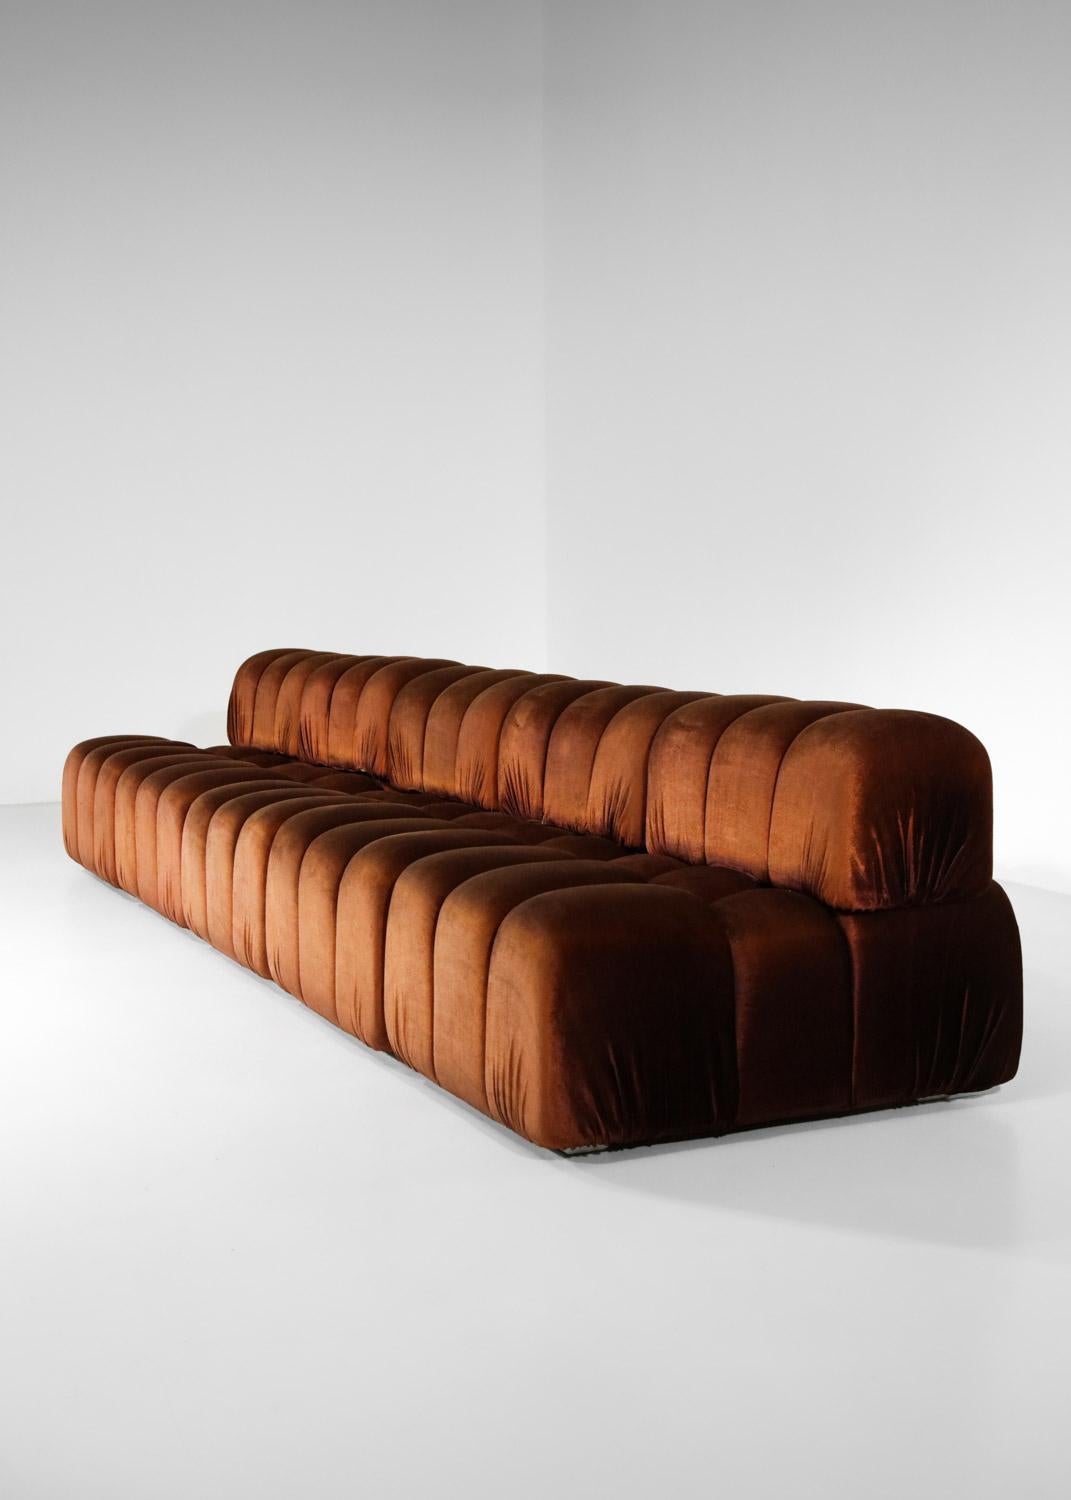 Italienisches Sofa mit 5 Modulen im Stil von Mario Bellini aus der Mitte des Jahrhunderts, 70er Jahre (Ende des 20. Jahrhunderts)